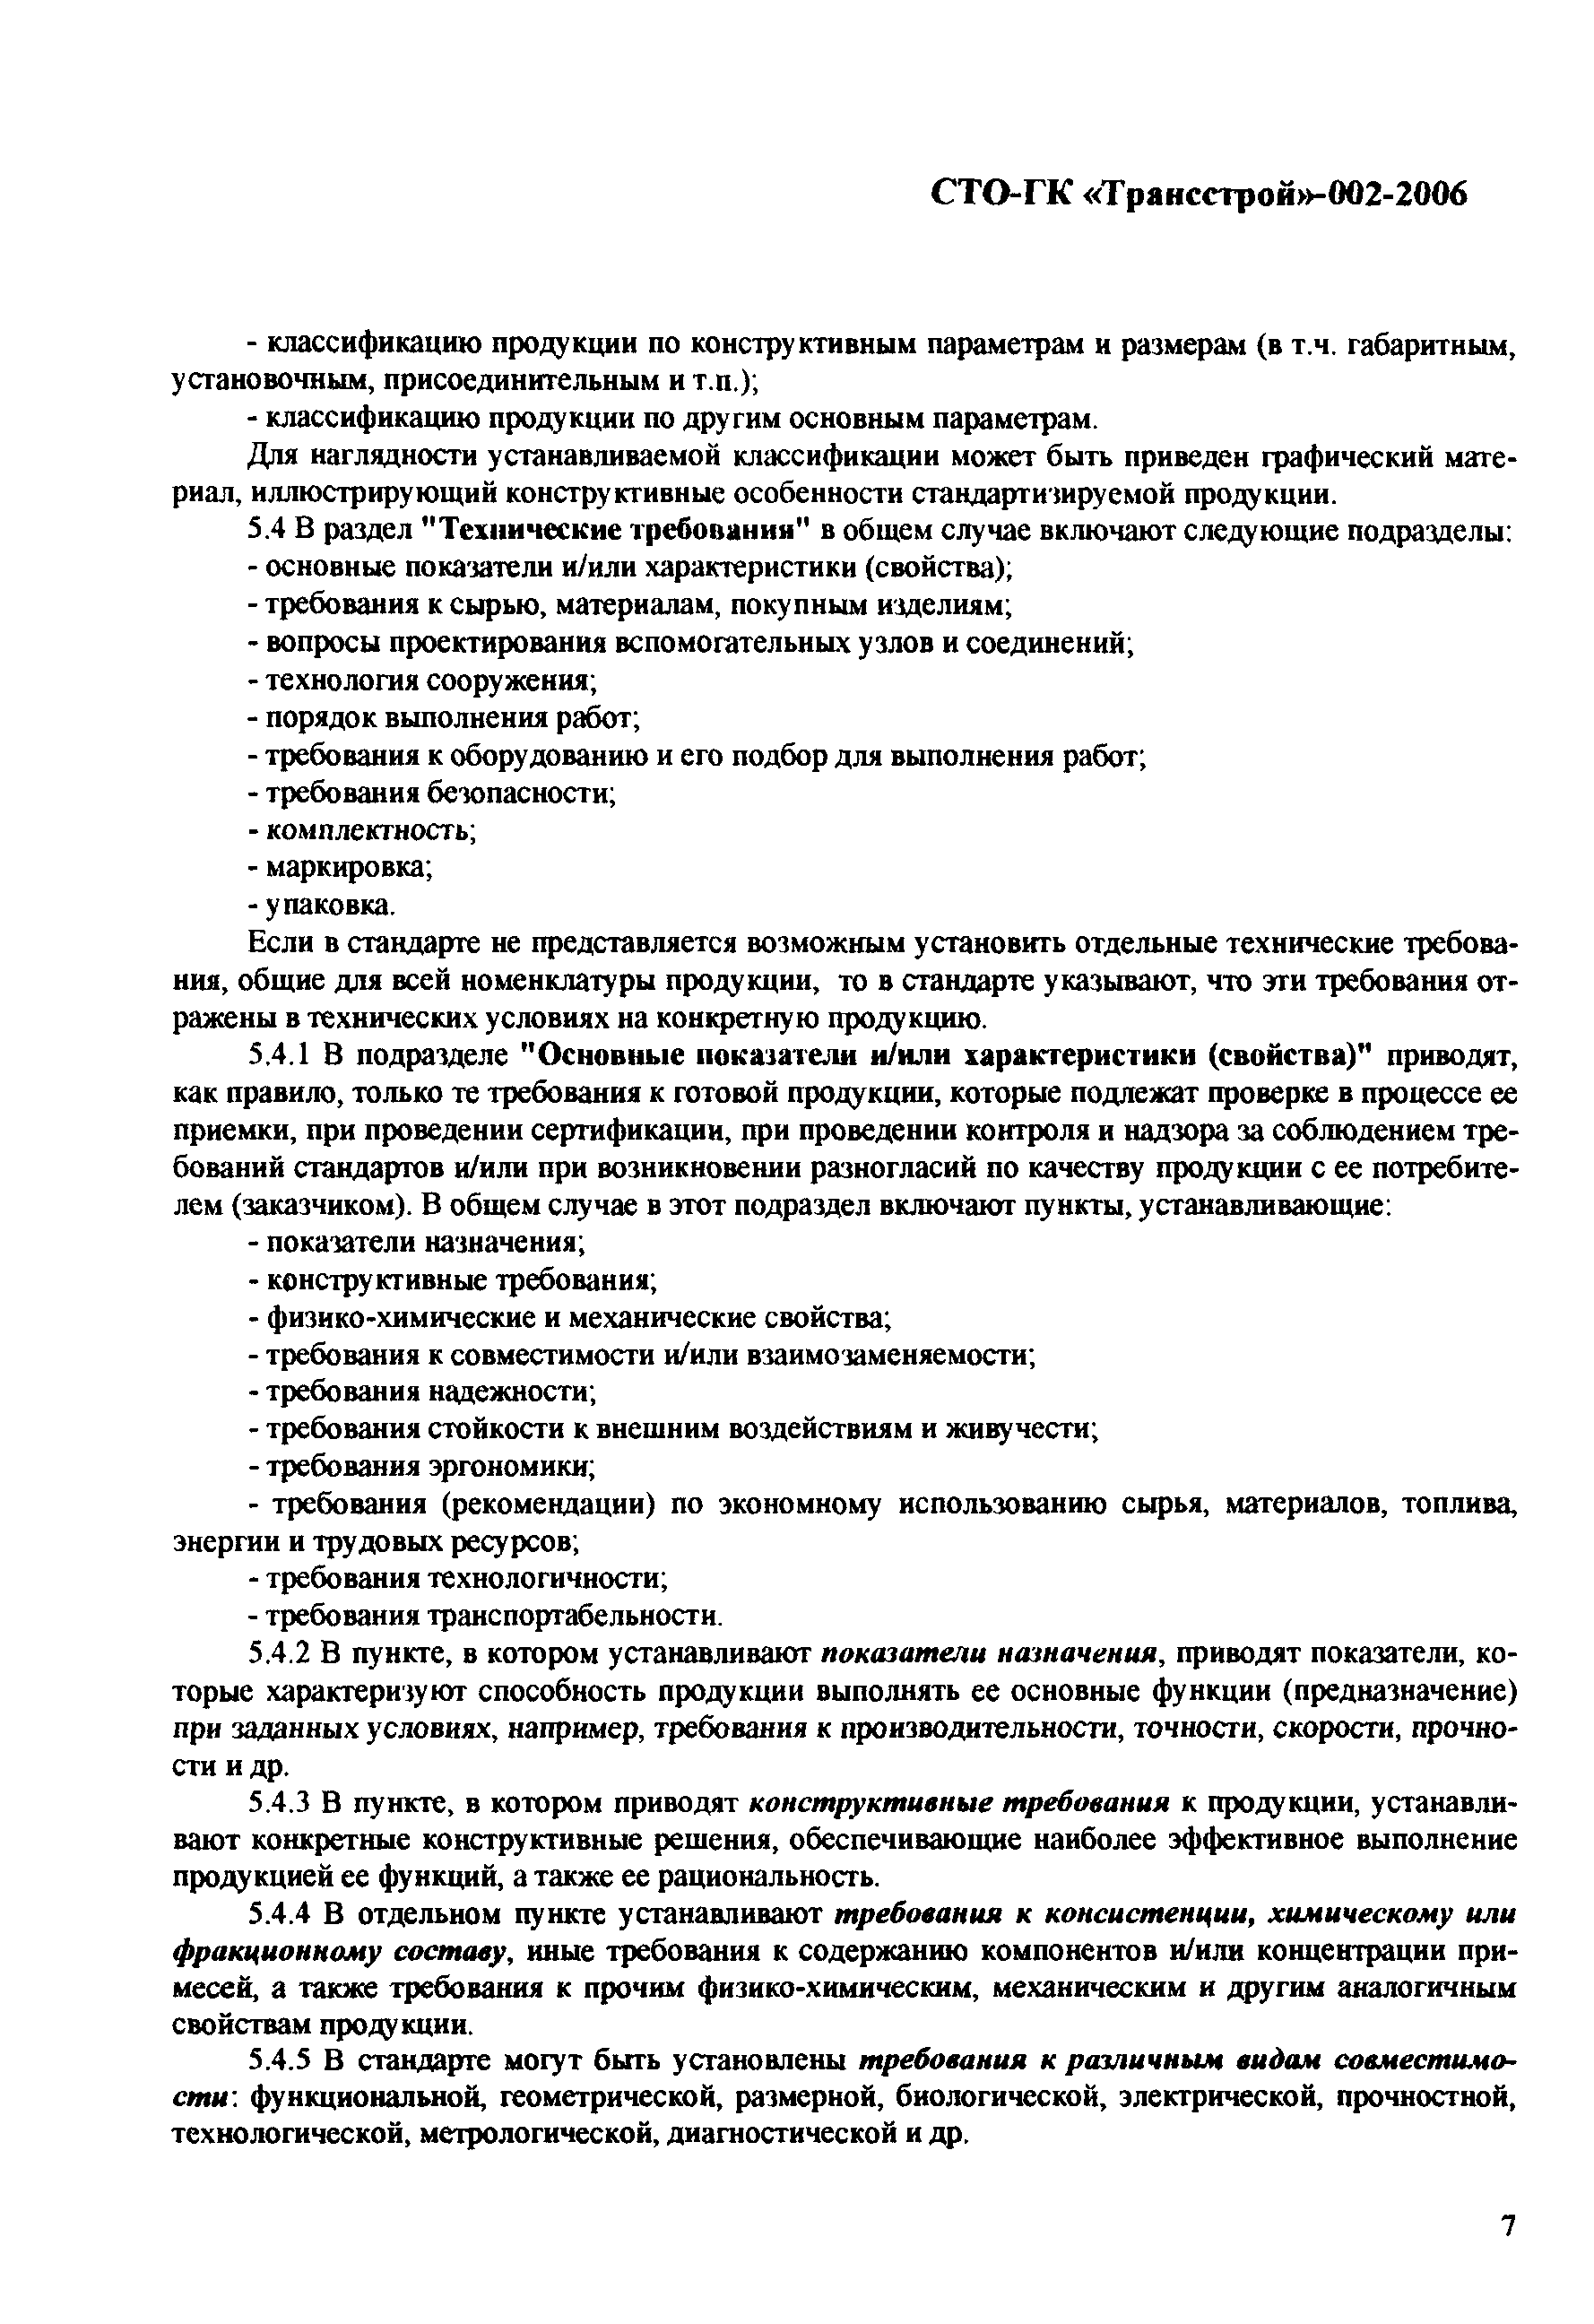 СТО-ГК "Трансстрой" 002-2006